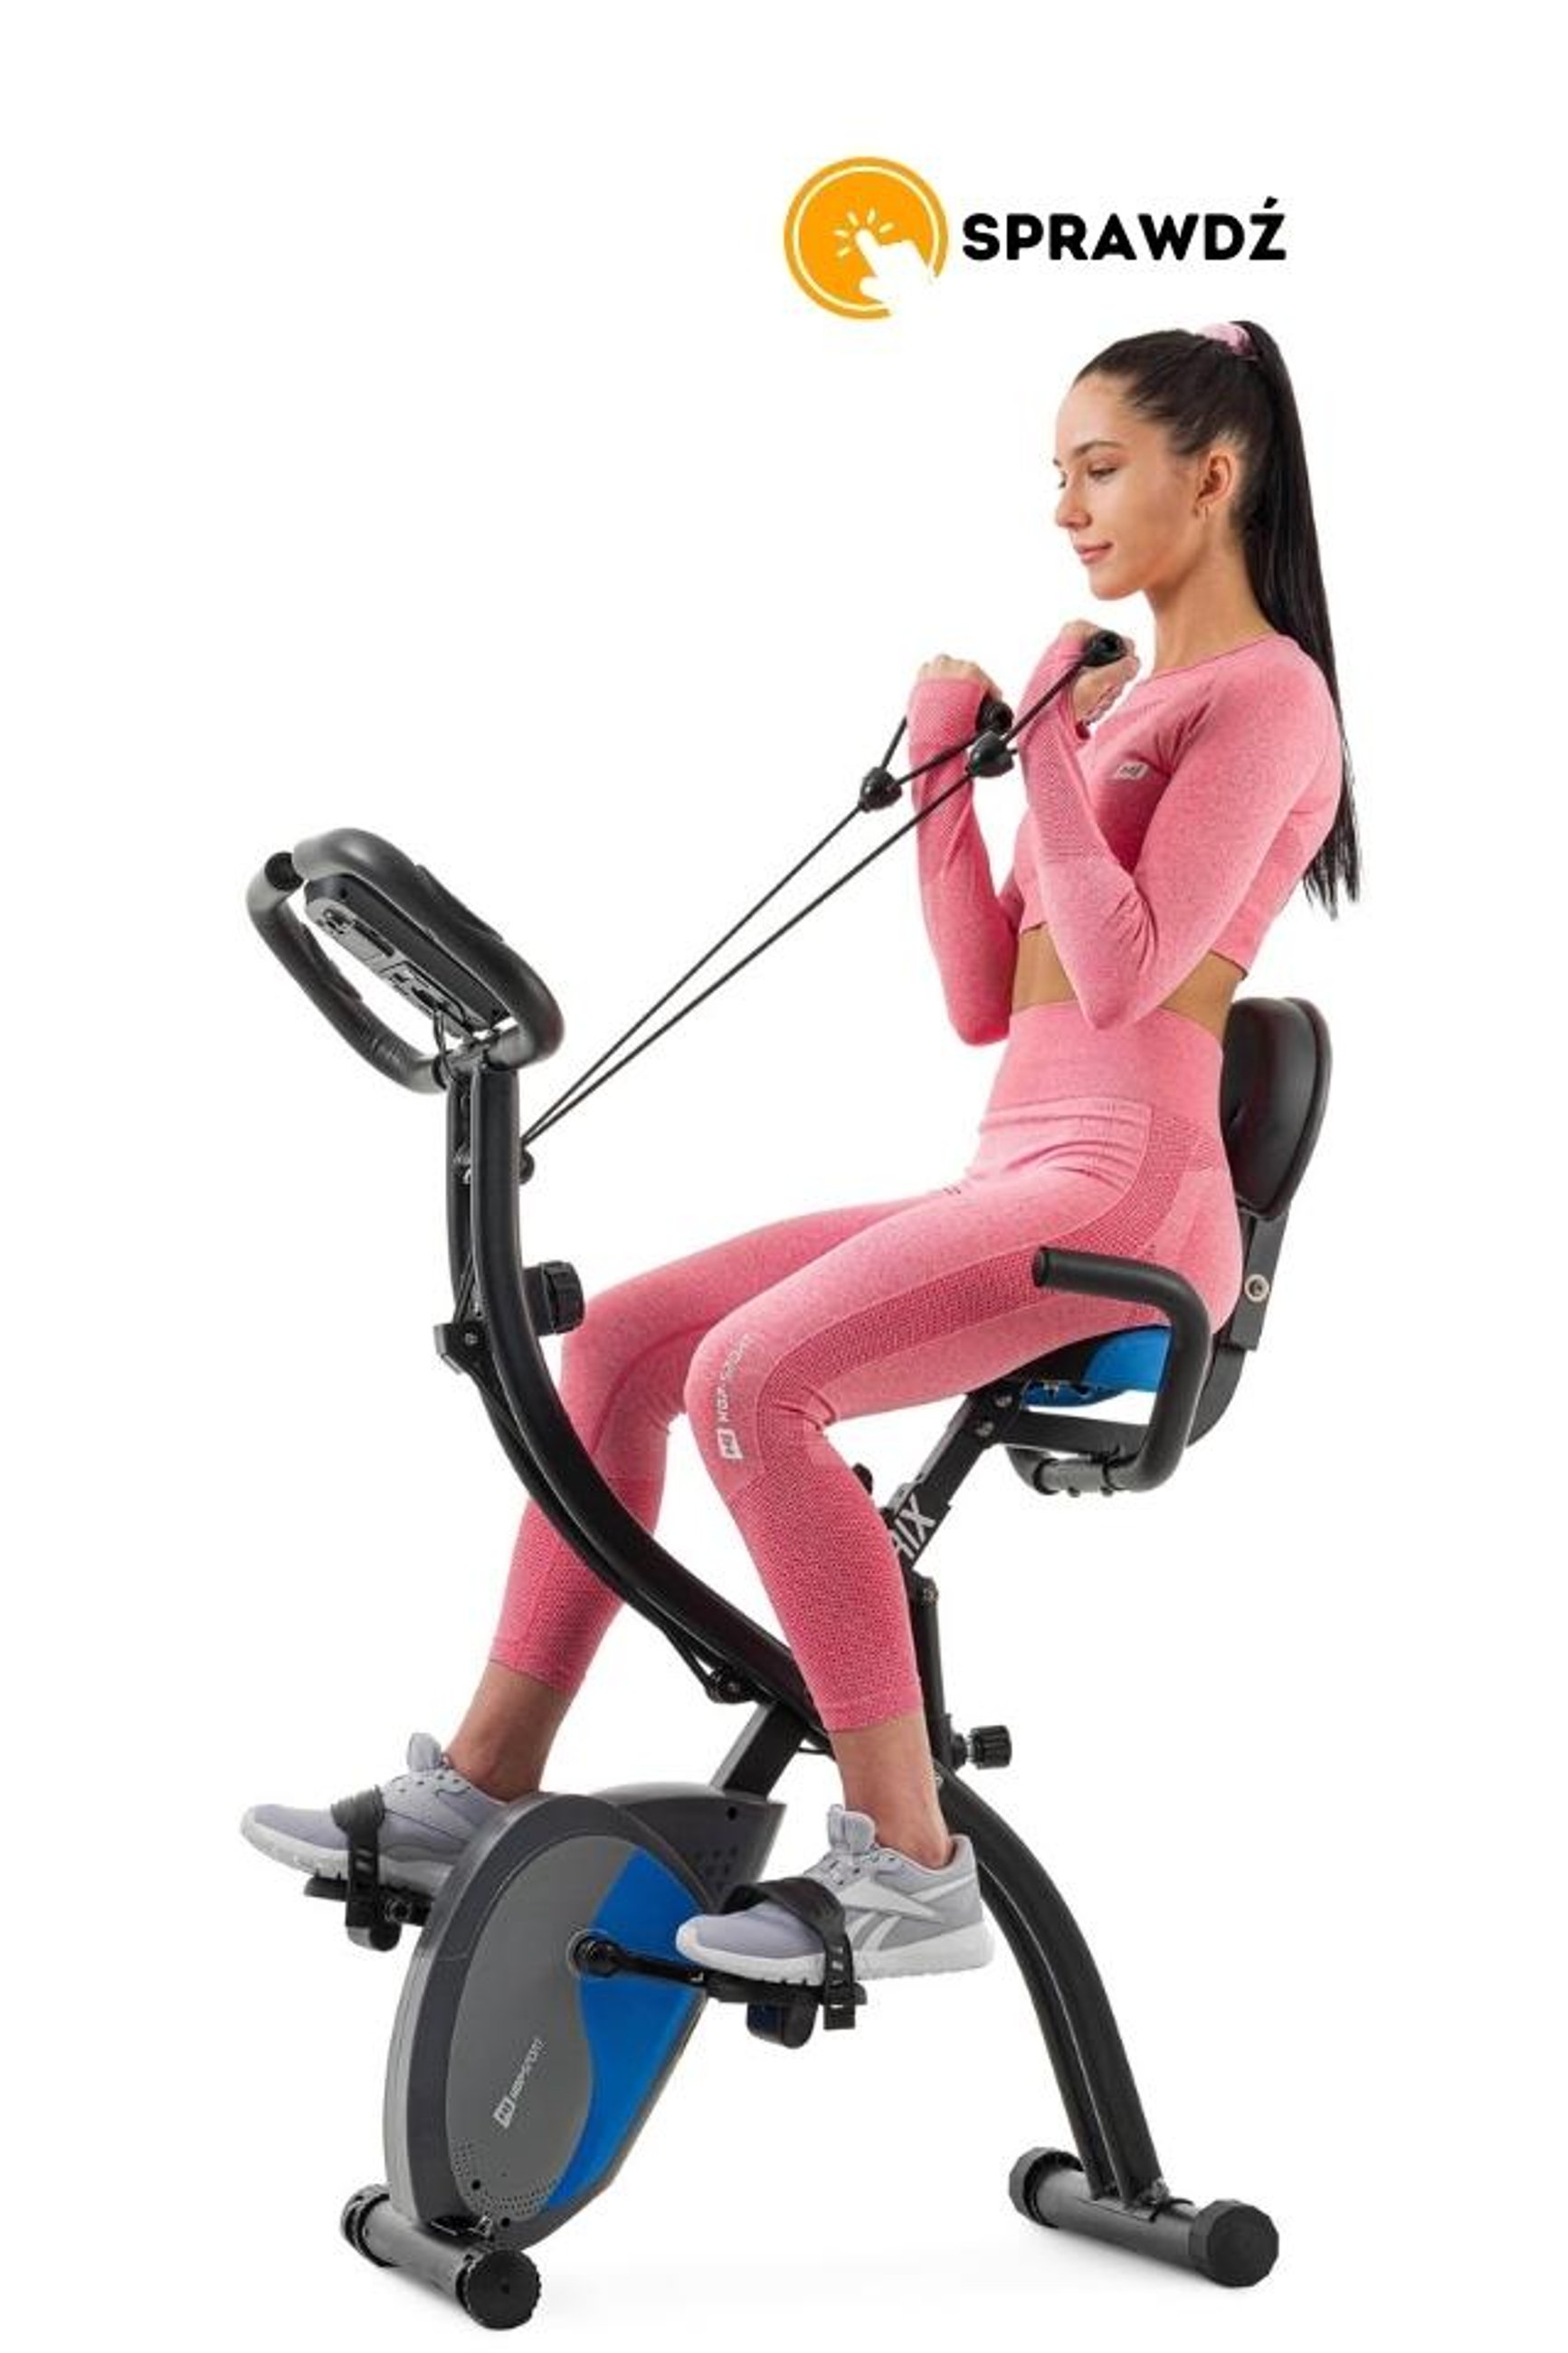 modelka ćwicząca na rowerze stacjonarnym HS-3010X Grix marki Hop-Sport